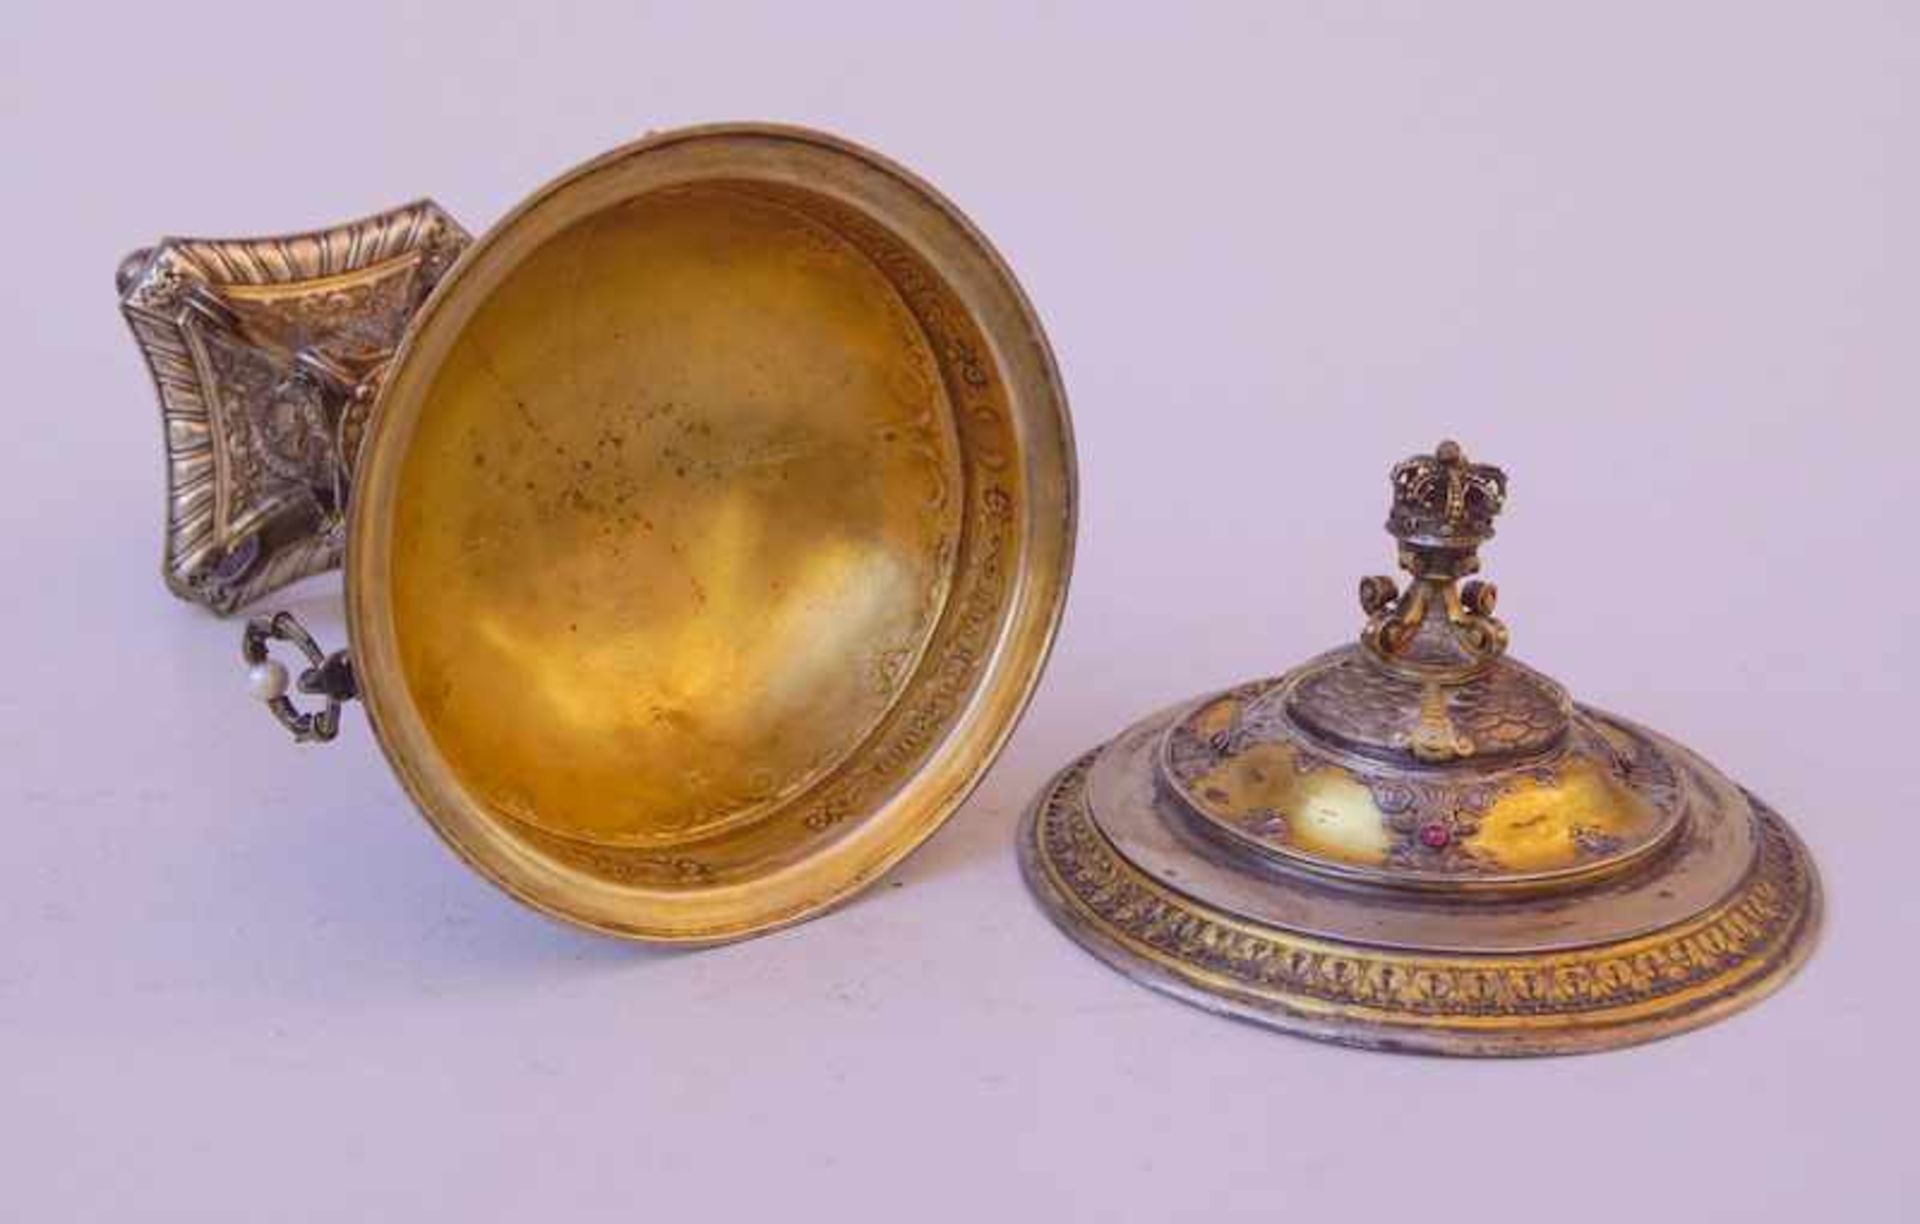 Herrschaftlicher Juwelenbesezter Pokal von Friedrich von Baden 1881 Diplomatengeschenk oder - Image 5 of 5